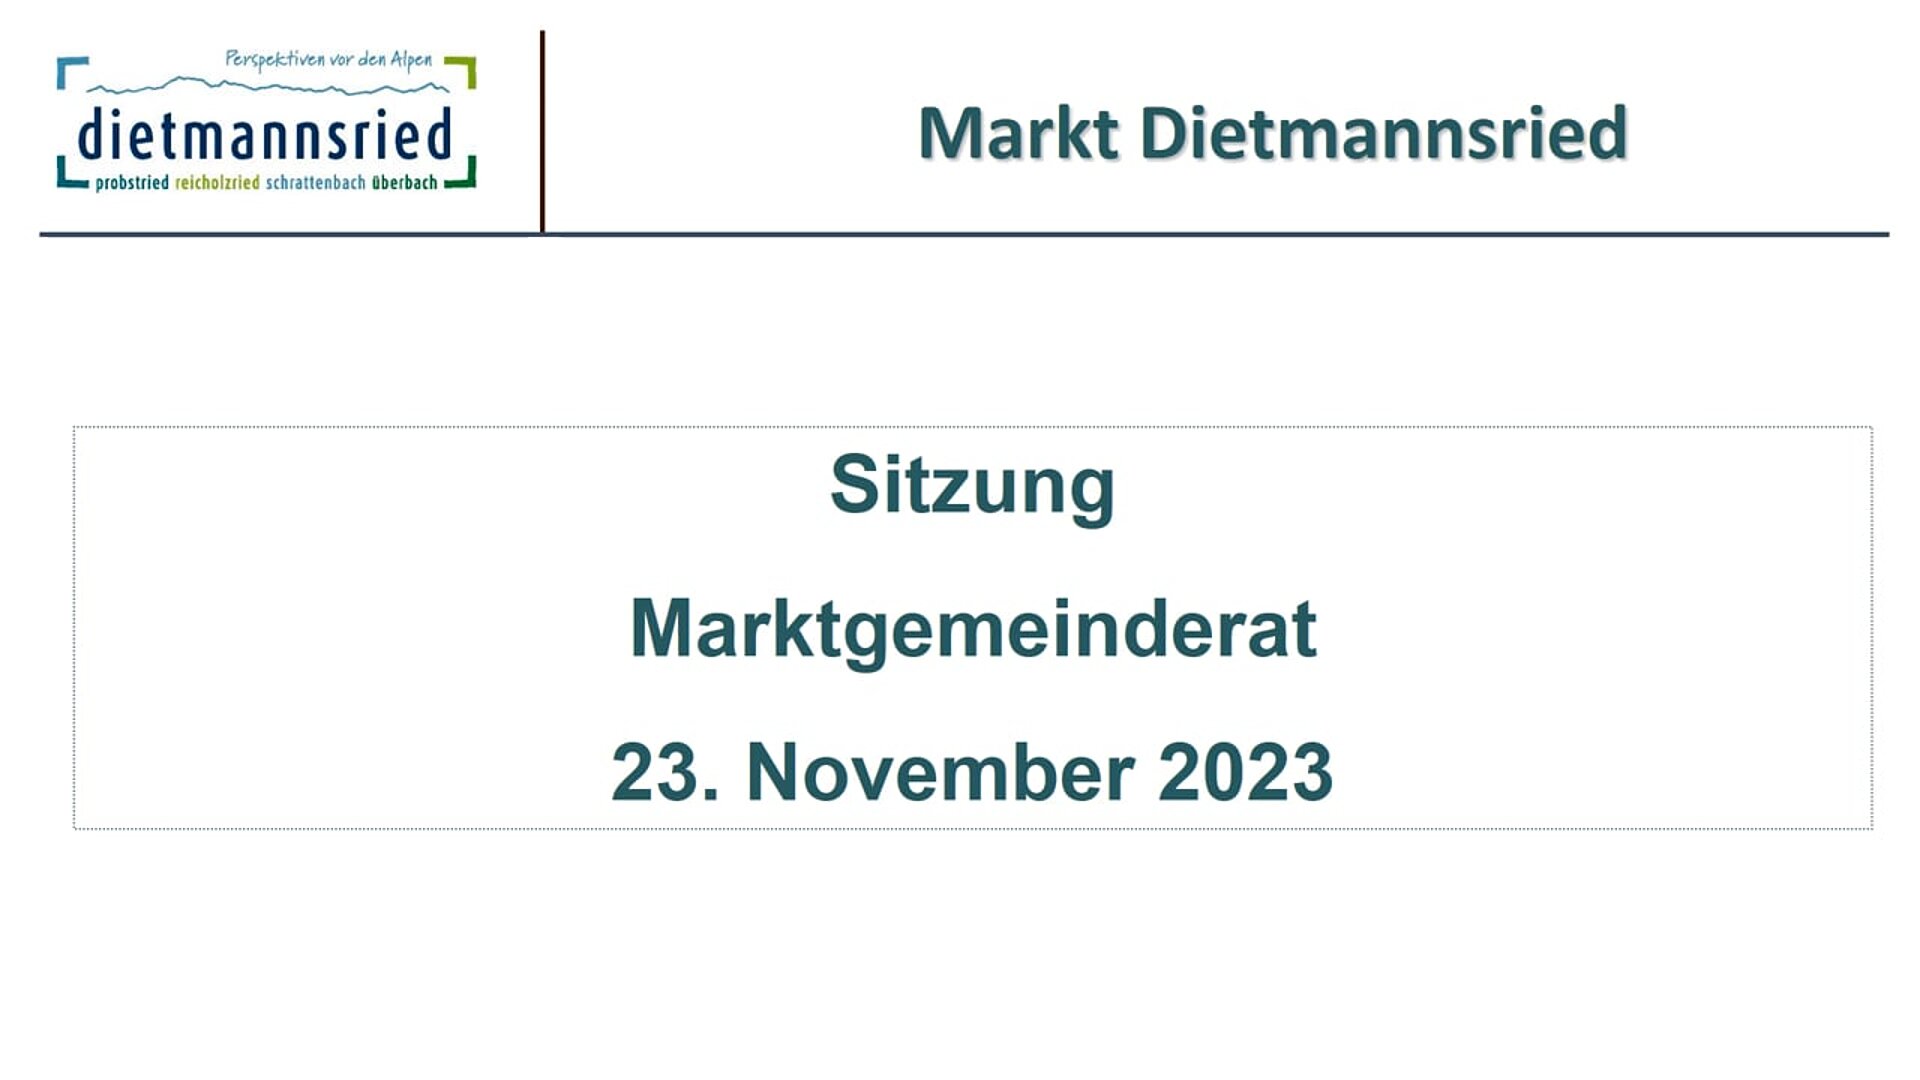 Sitzung Marktgemeinderat vom 23. November 2023